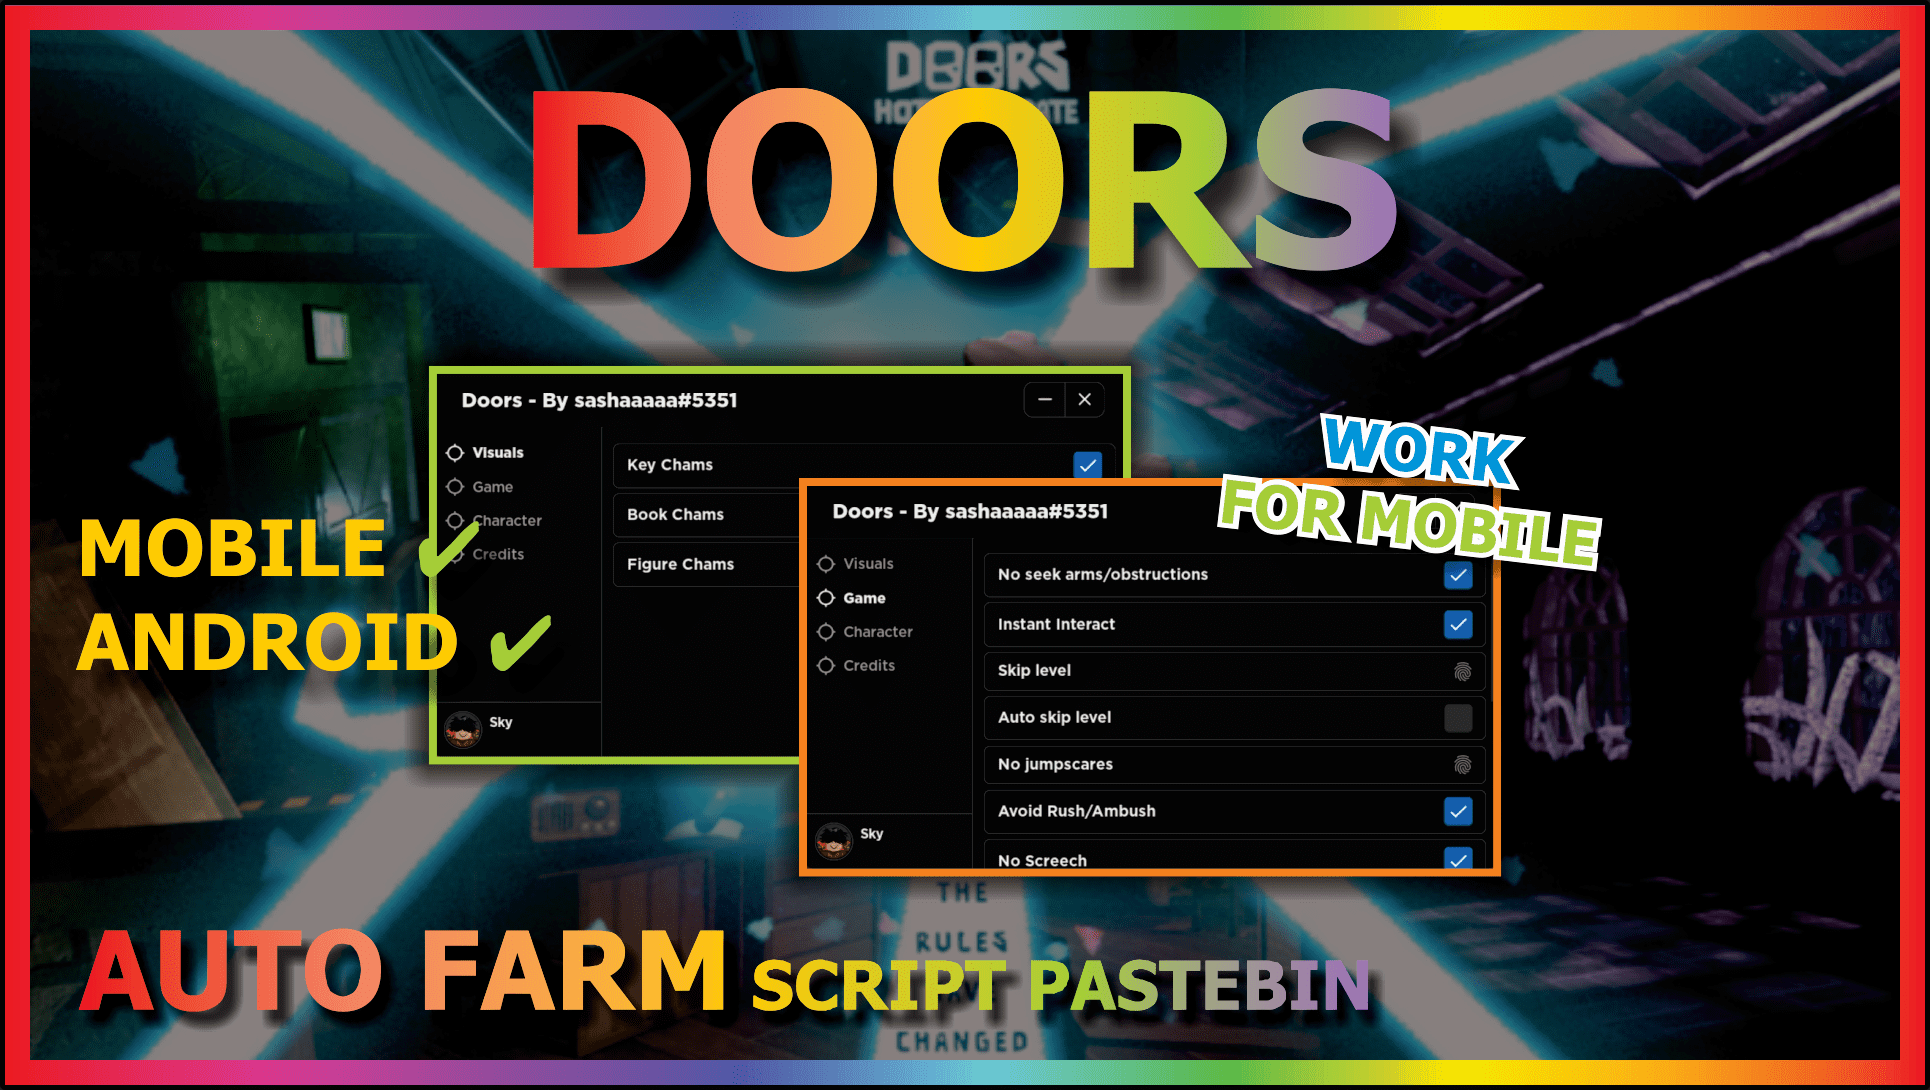 doors Script Pastebin 2022 – ScriptPastebin